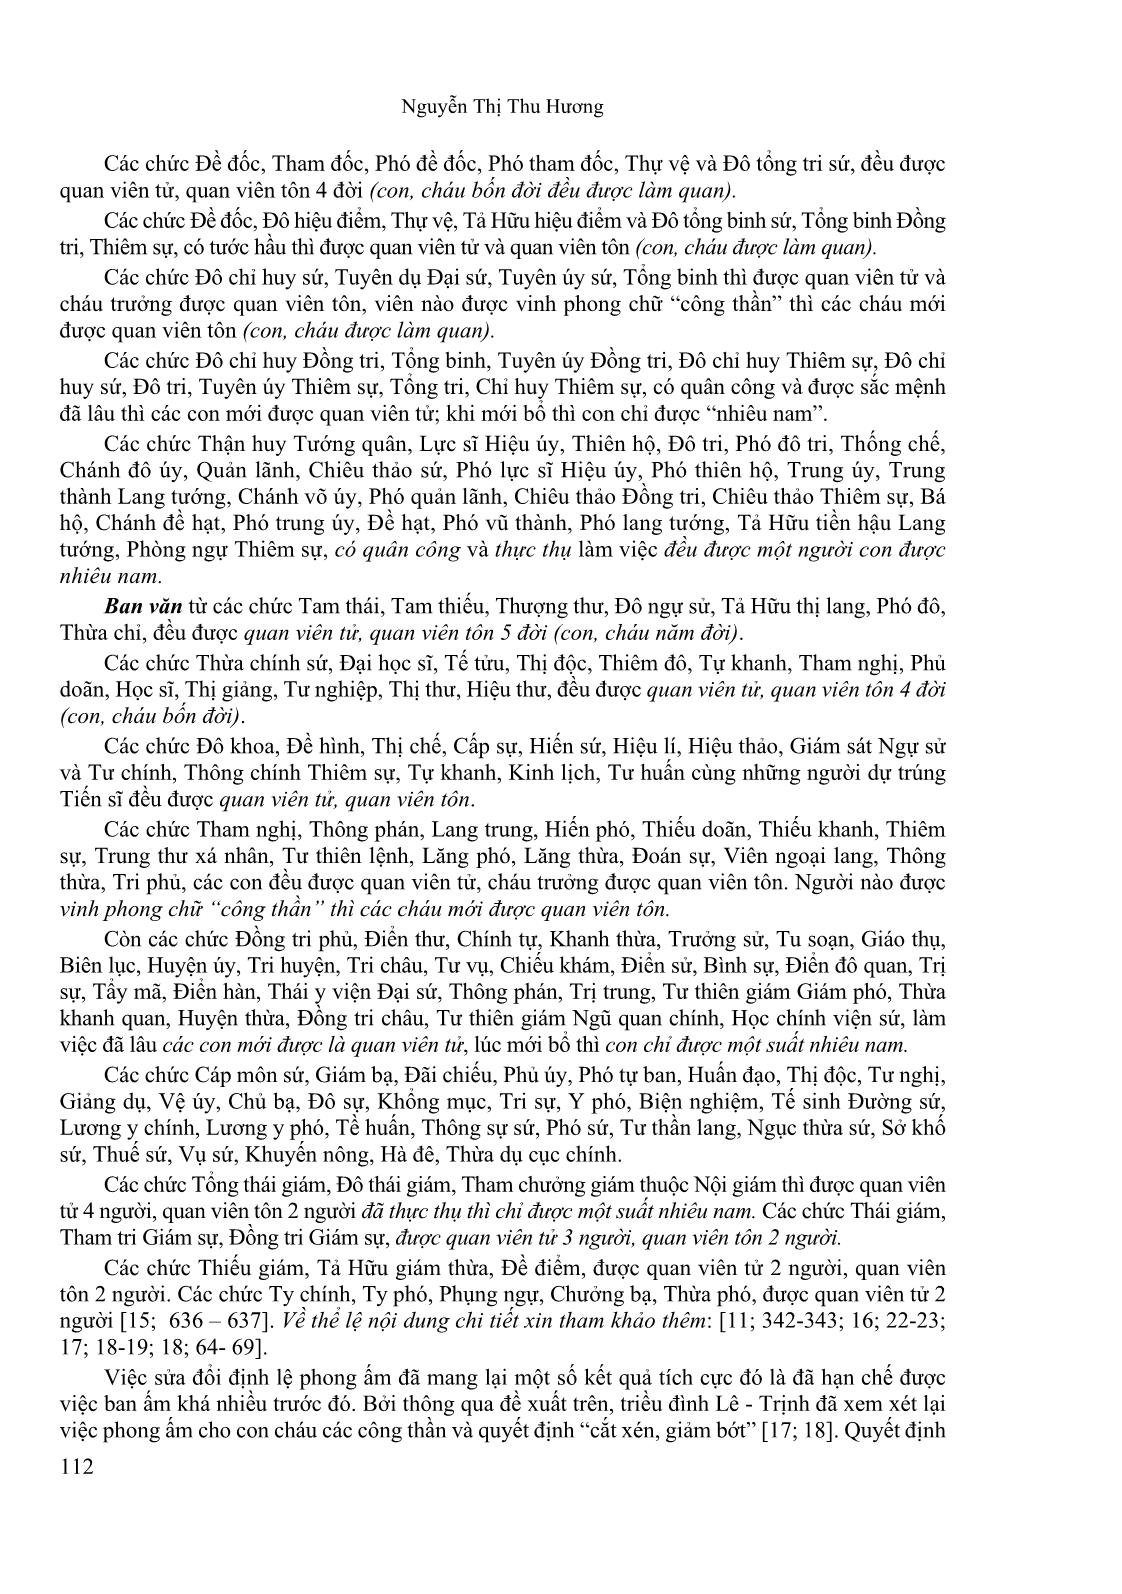 Tham tụng Hồ Sĩ Dương với những đóng góp nổi bật trong lịch sử Đại Việt thế kỉ XVII trang 6